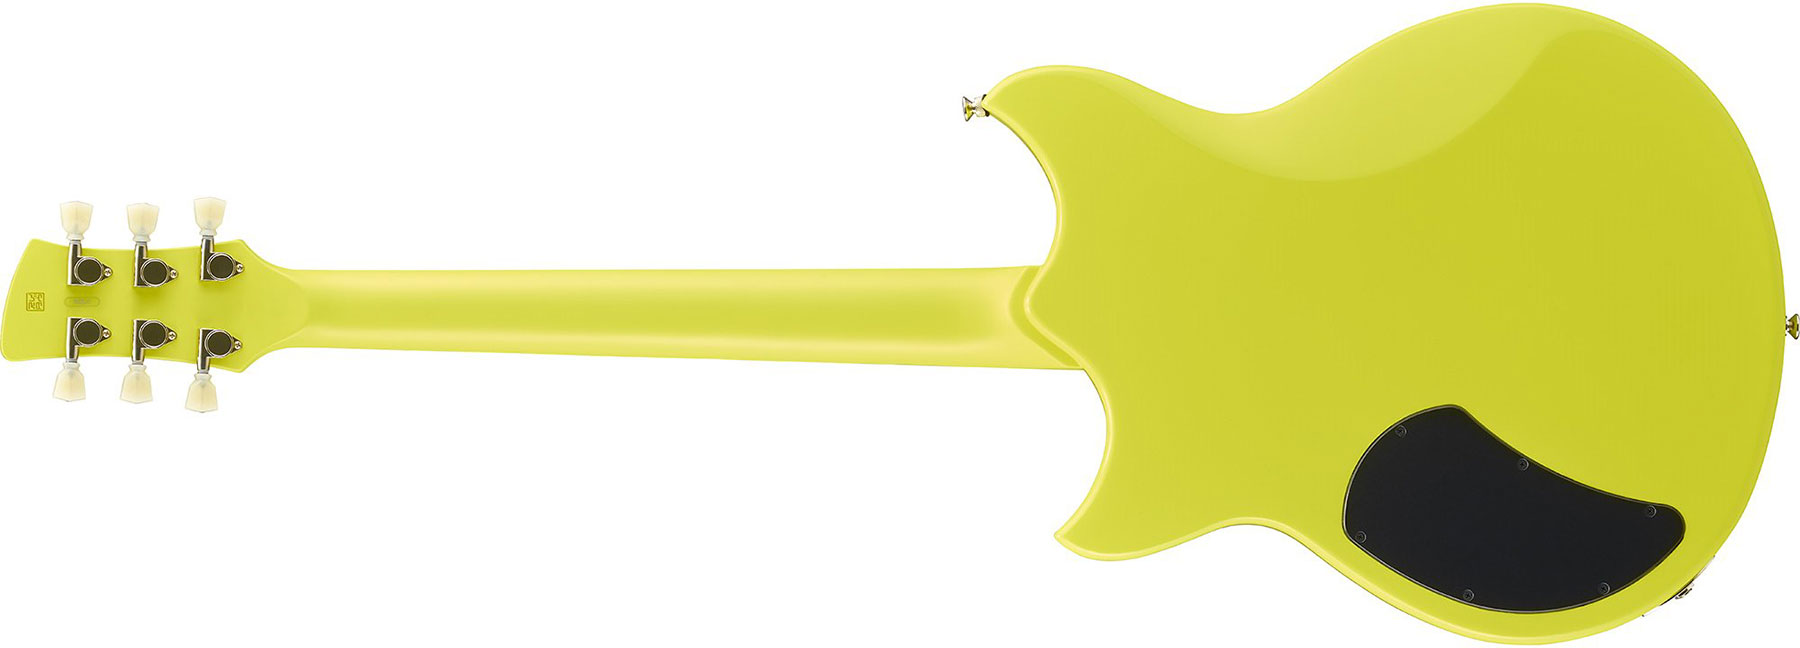 Yamaha Rse20 Revstar Element Hh Ht Rw - Neon Yellow - Guitare Électrique Double Cut - Variation 2